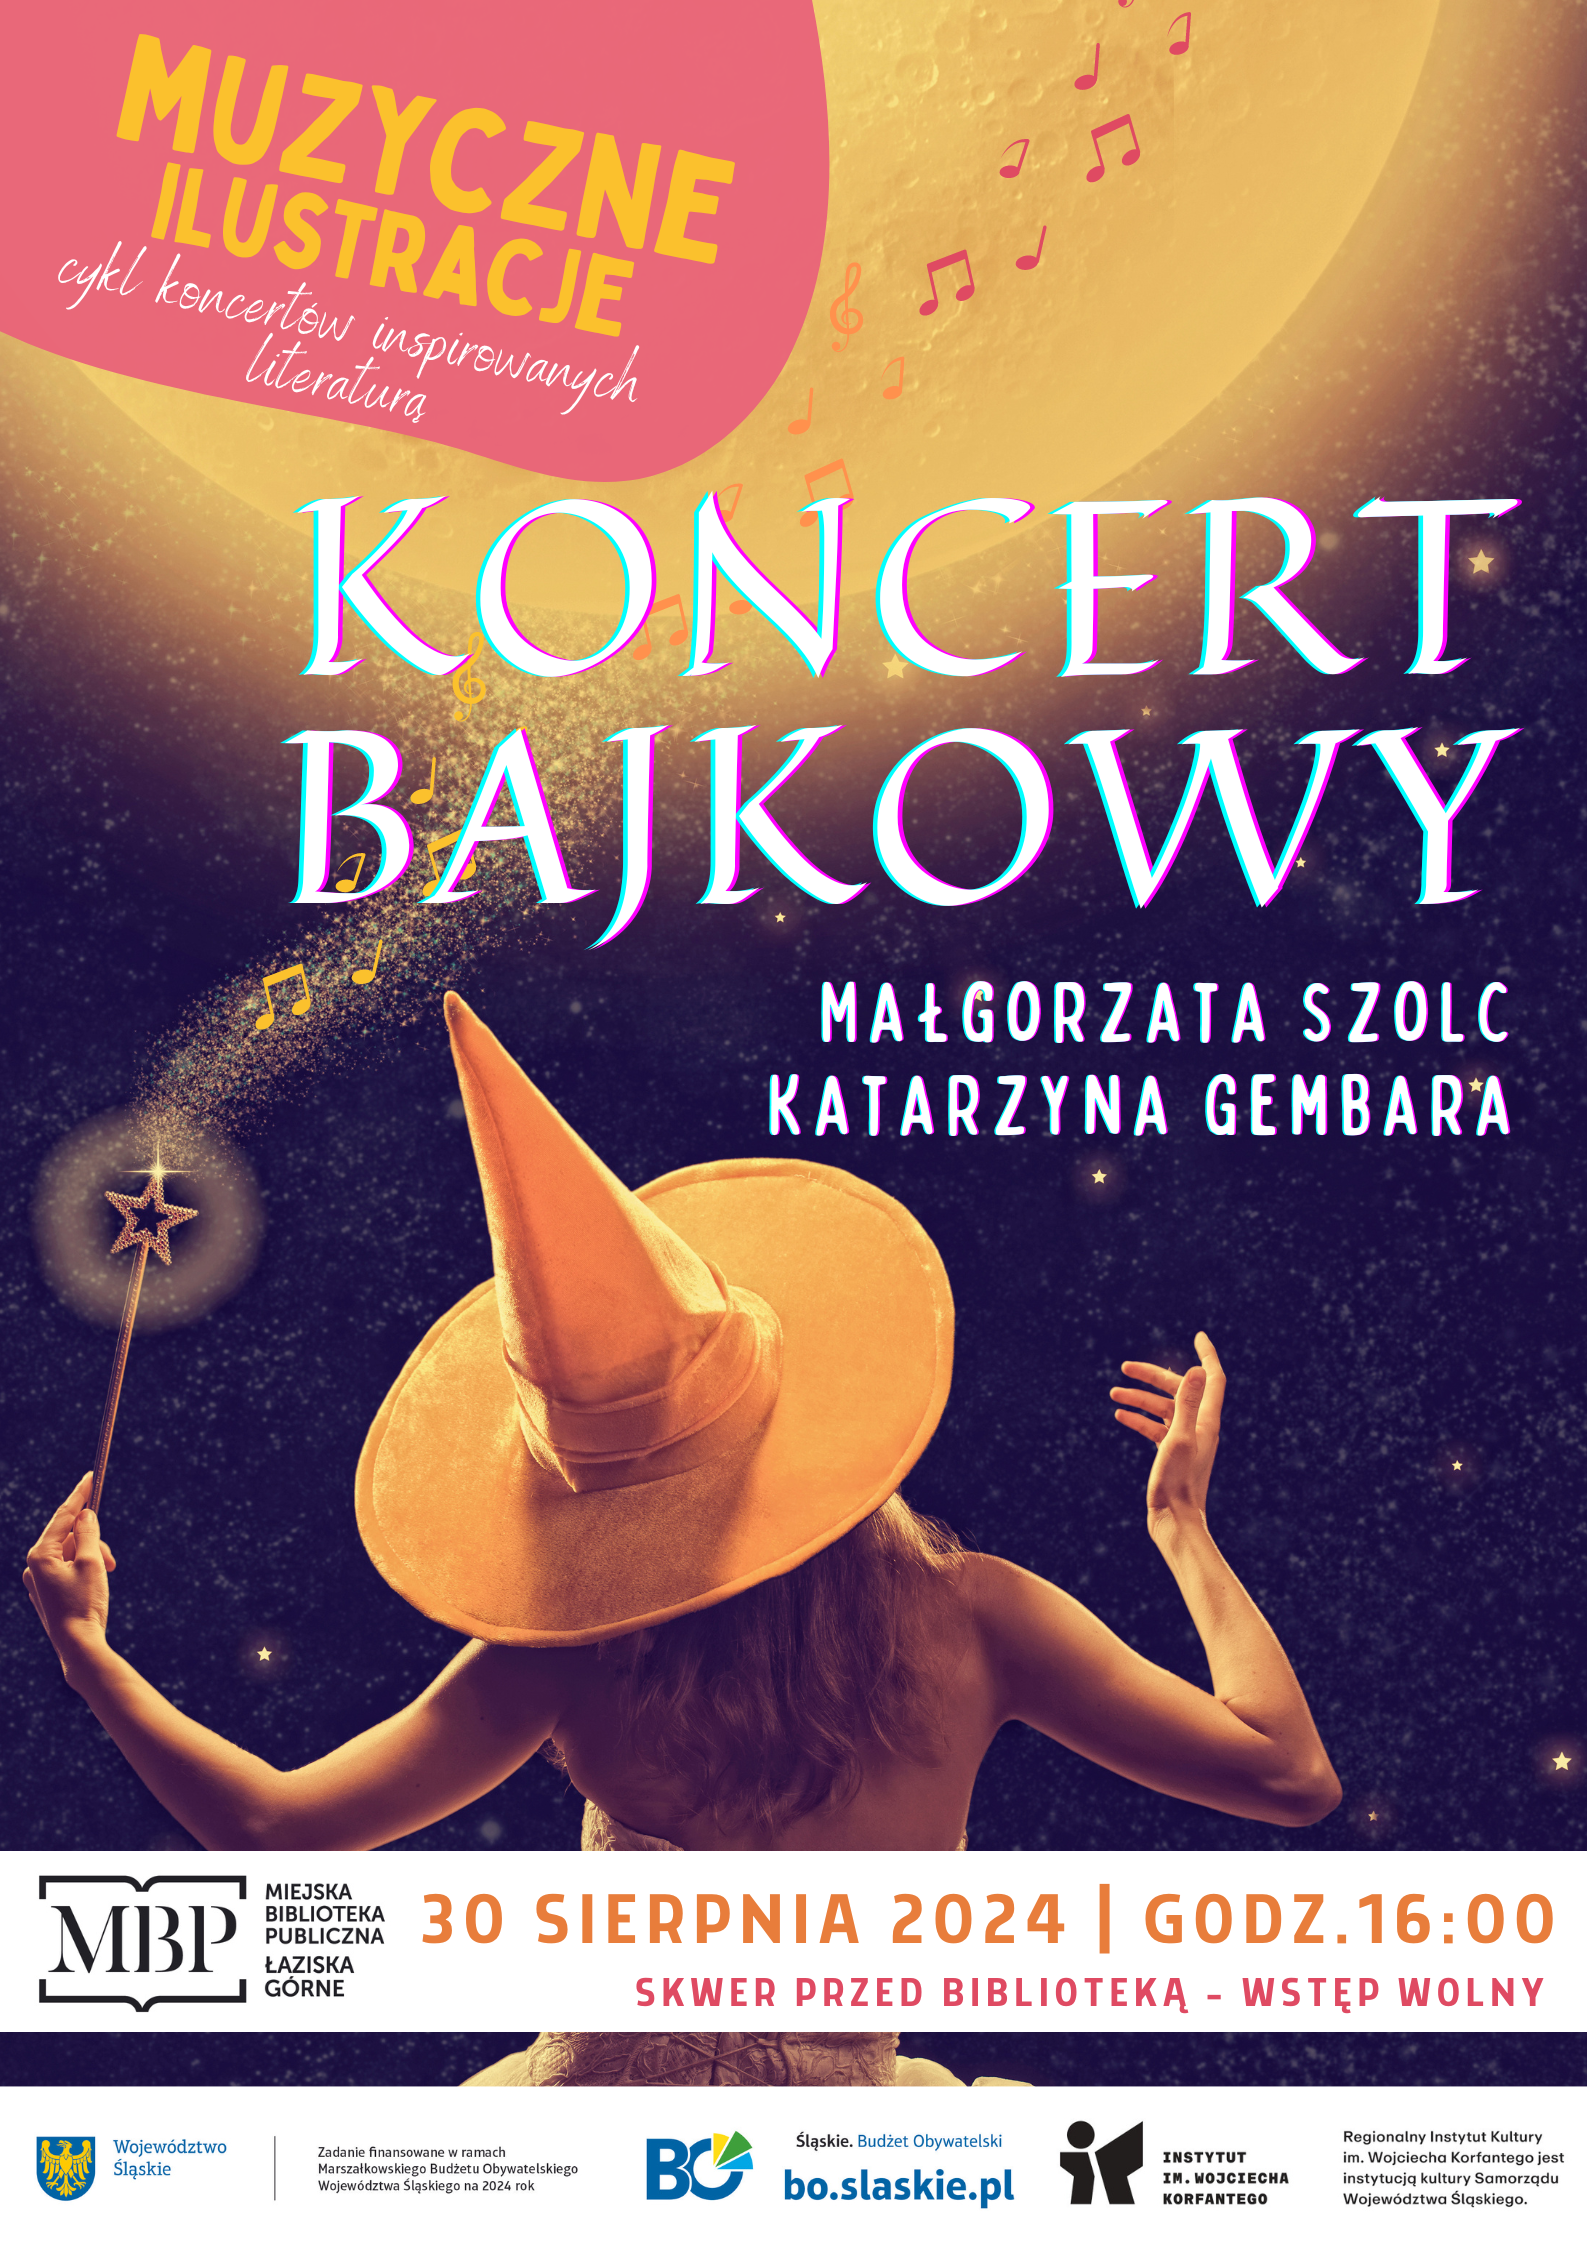 Plakat Bajkowy Koncert - Małgorzata Szolc, Katarzyna Gembara. W tle zdjęcie stojącej tyłem osoby w kapeluszu wróżki, z różdżką w ręce